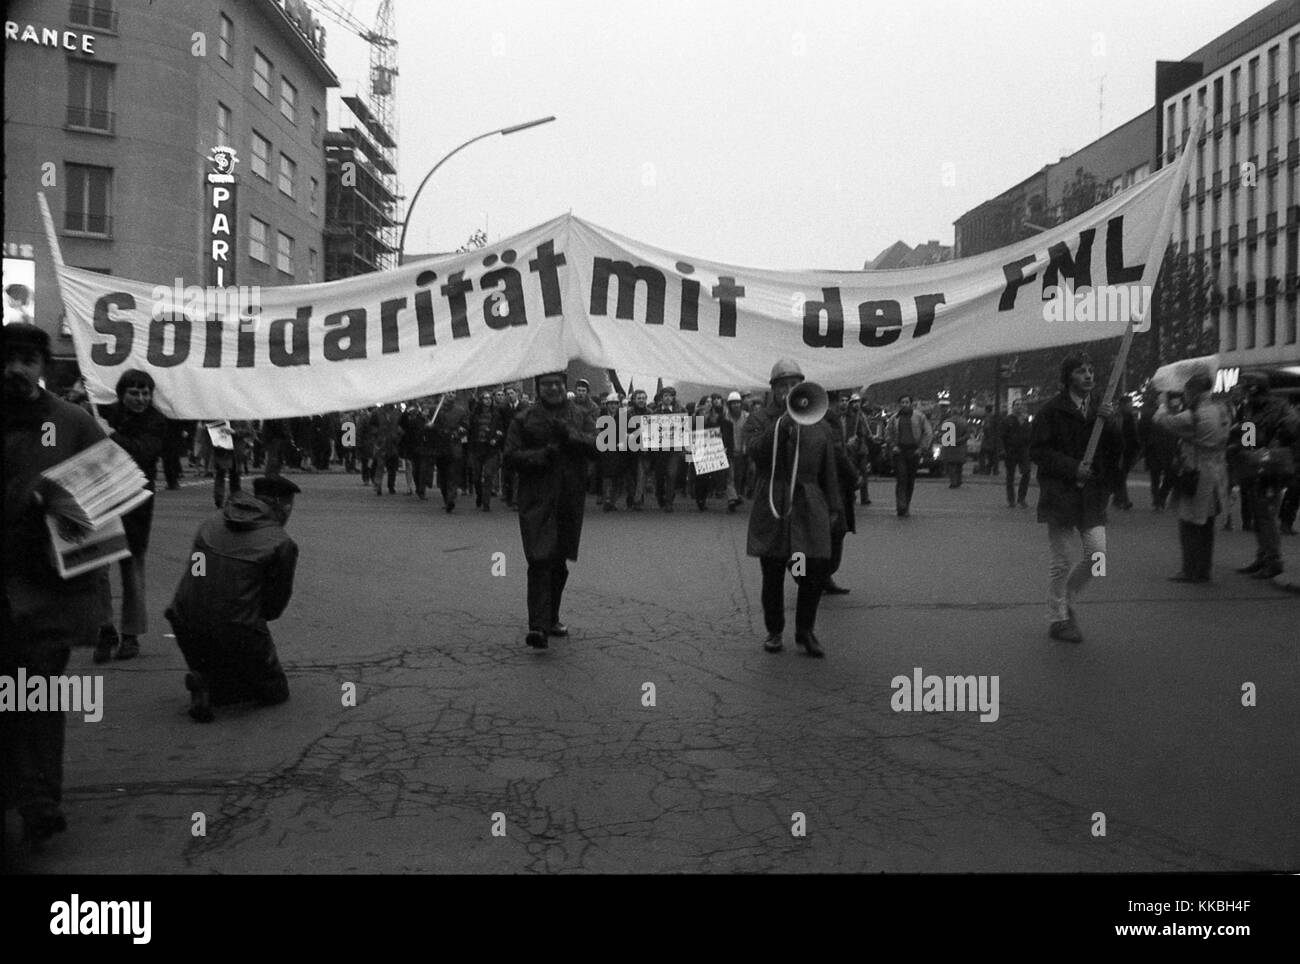 Philippe Gras / Le Pictorium - Rassemblement à Berlin en 1968 - 1968 - Allemagne / Berlin - Les démonstrations allemand terminera le 17 et 18 février 1968. À Berlin, des milliers d'étudiants de toute l'Europe s'opposent à la guerre au Vietnam et la réforme des universités. Le mouvement s'étend aux grandes villes de l'université allemande. Dans 30 villes allemandes, les manifestations d'étudiants se tournent vers la confrontation avec la police. Ce sont les émeutes de Pâques. La répression est brutale, et met un terme à des manifestations massives. La dernière a lieu à Bonn le 11 mai 1968, et réunit une centaine de thousa Banque D'Images